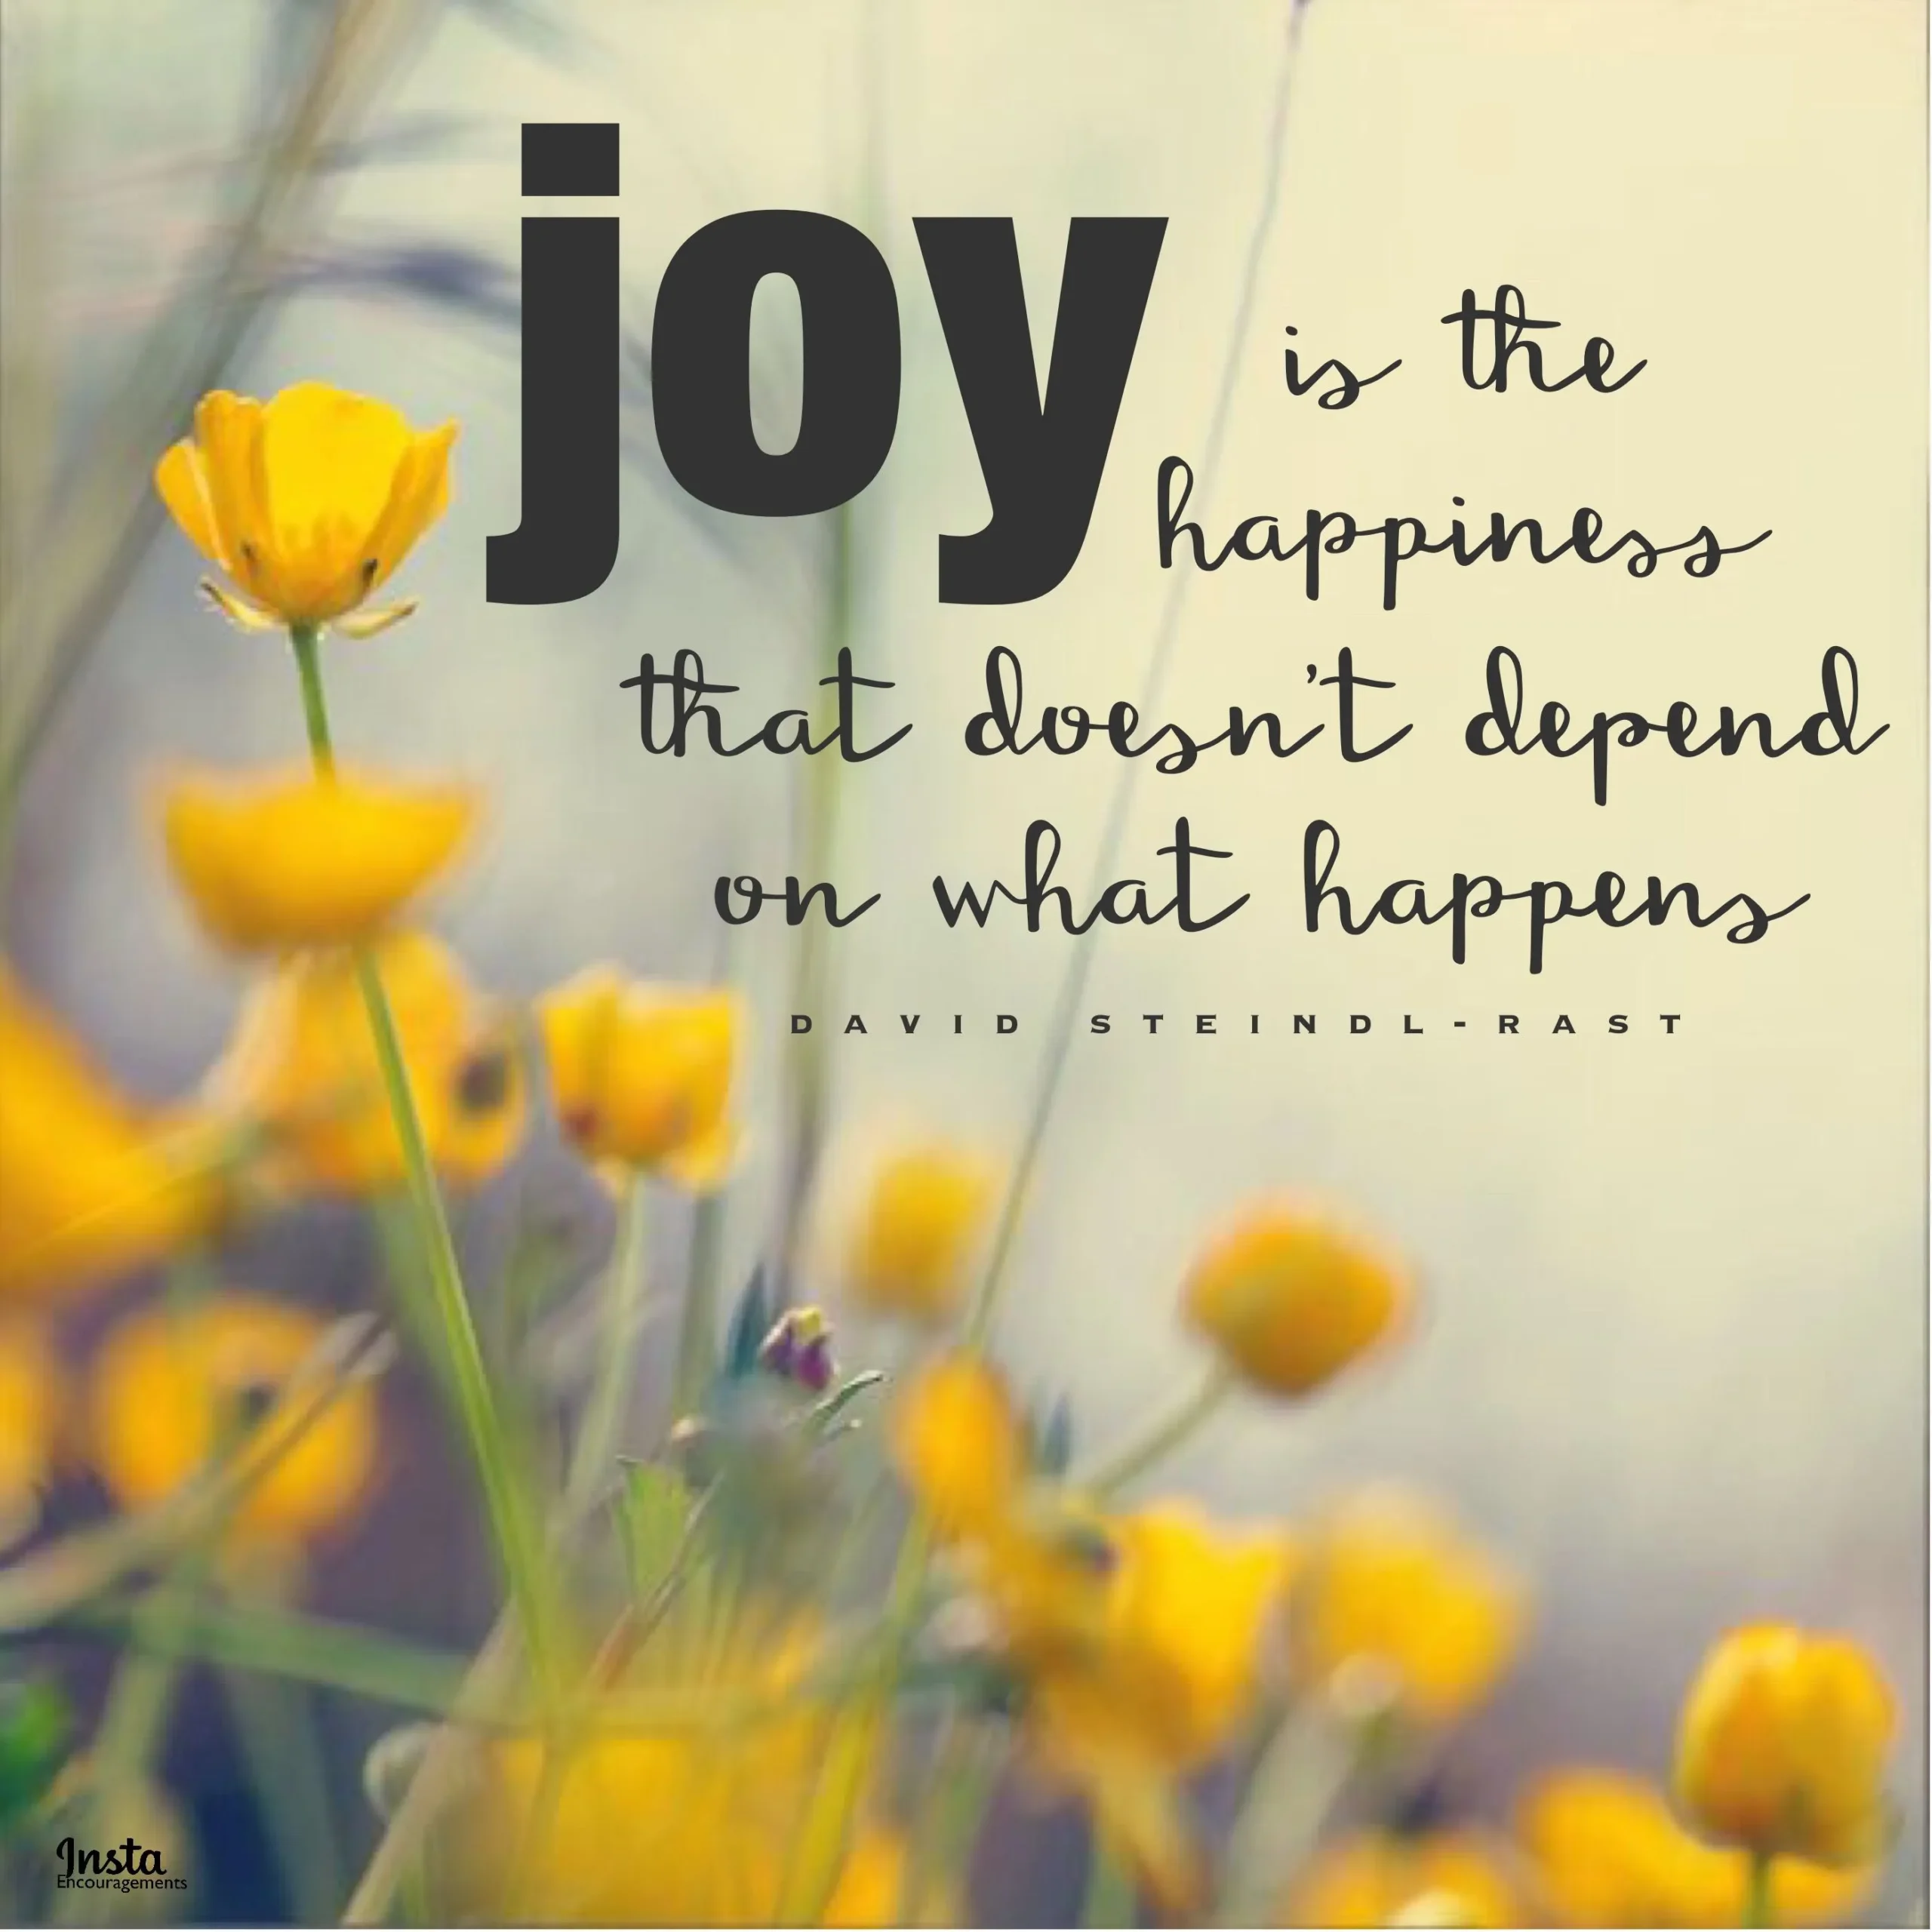 joyful vs happy